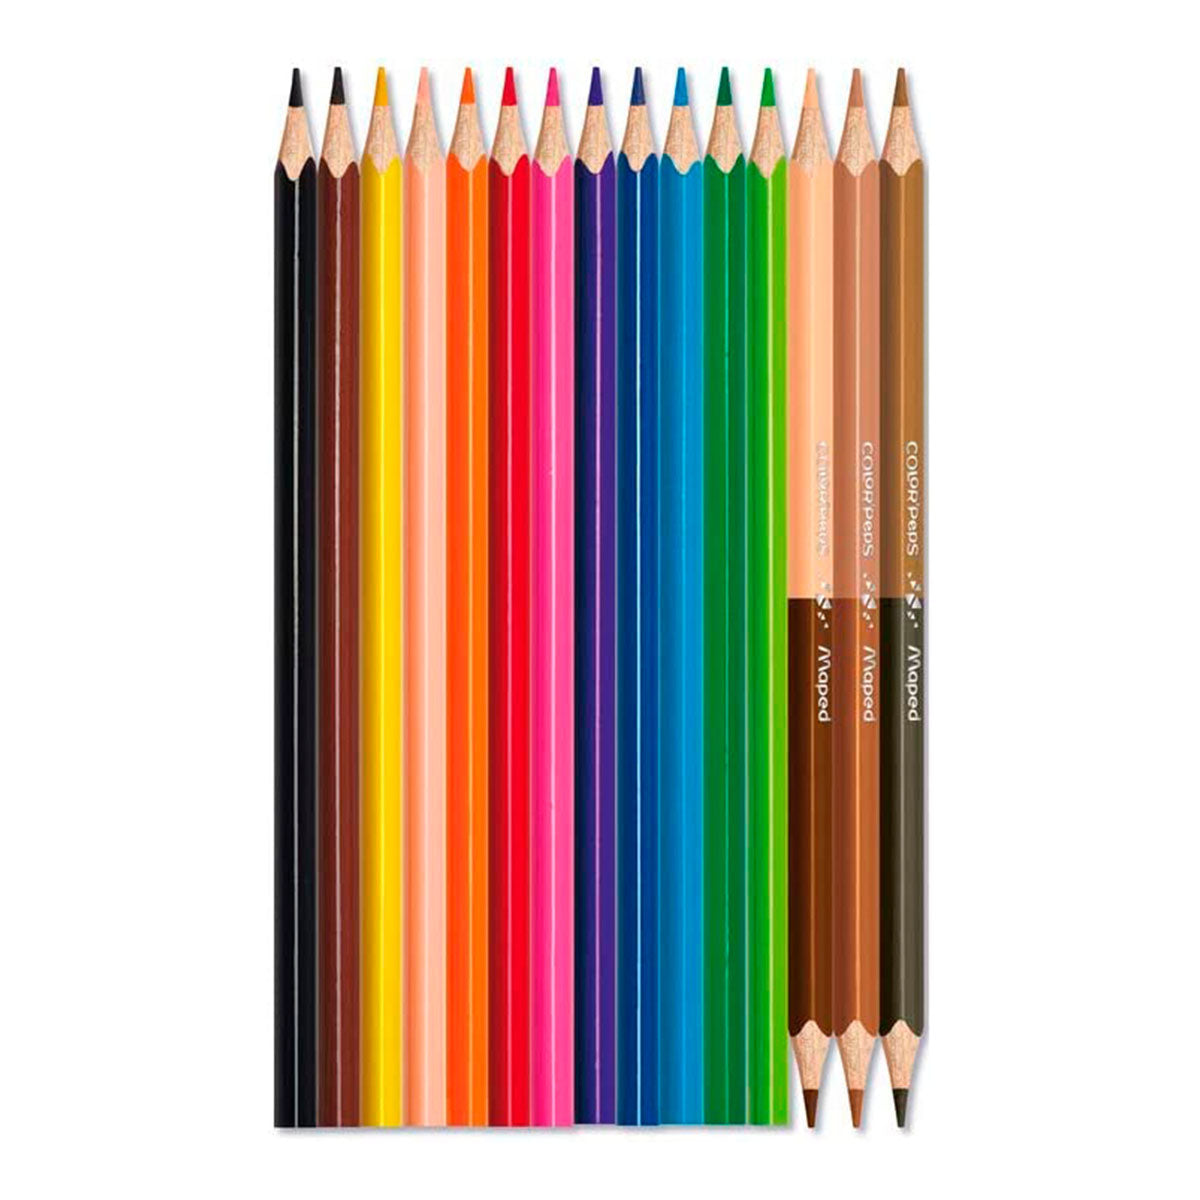 MAPED Color'Peps - Caja de 12 Lápices de Colores. Incluye 3 Lápices Duo Color Piel